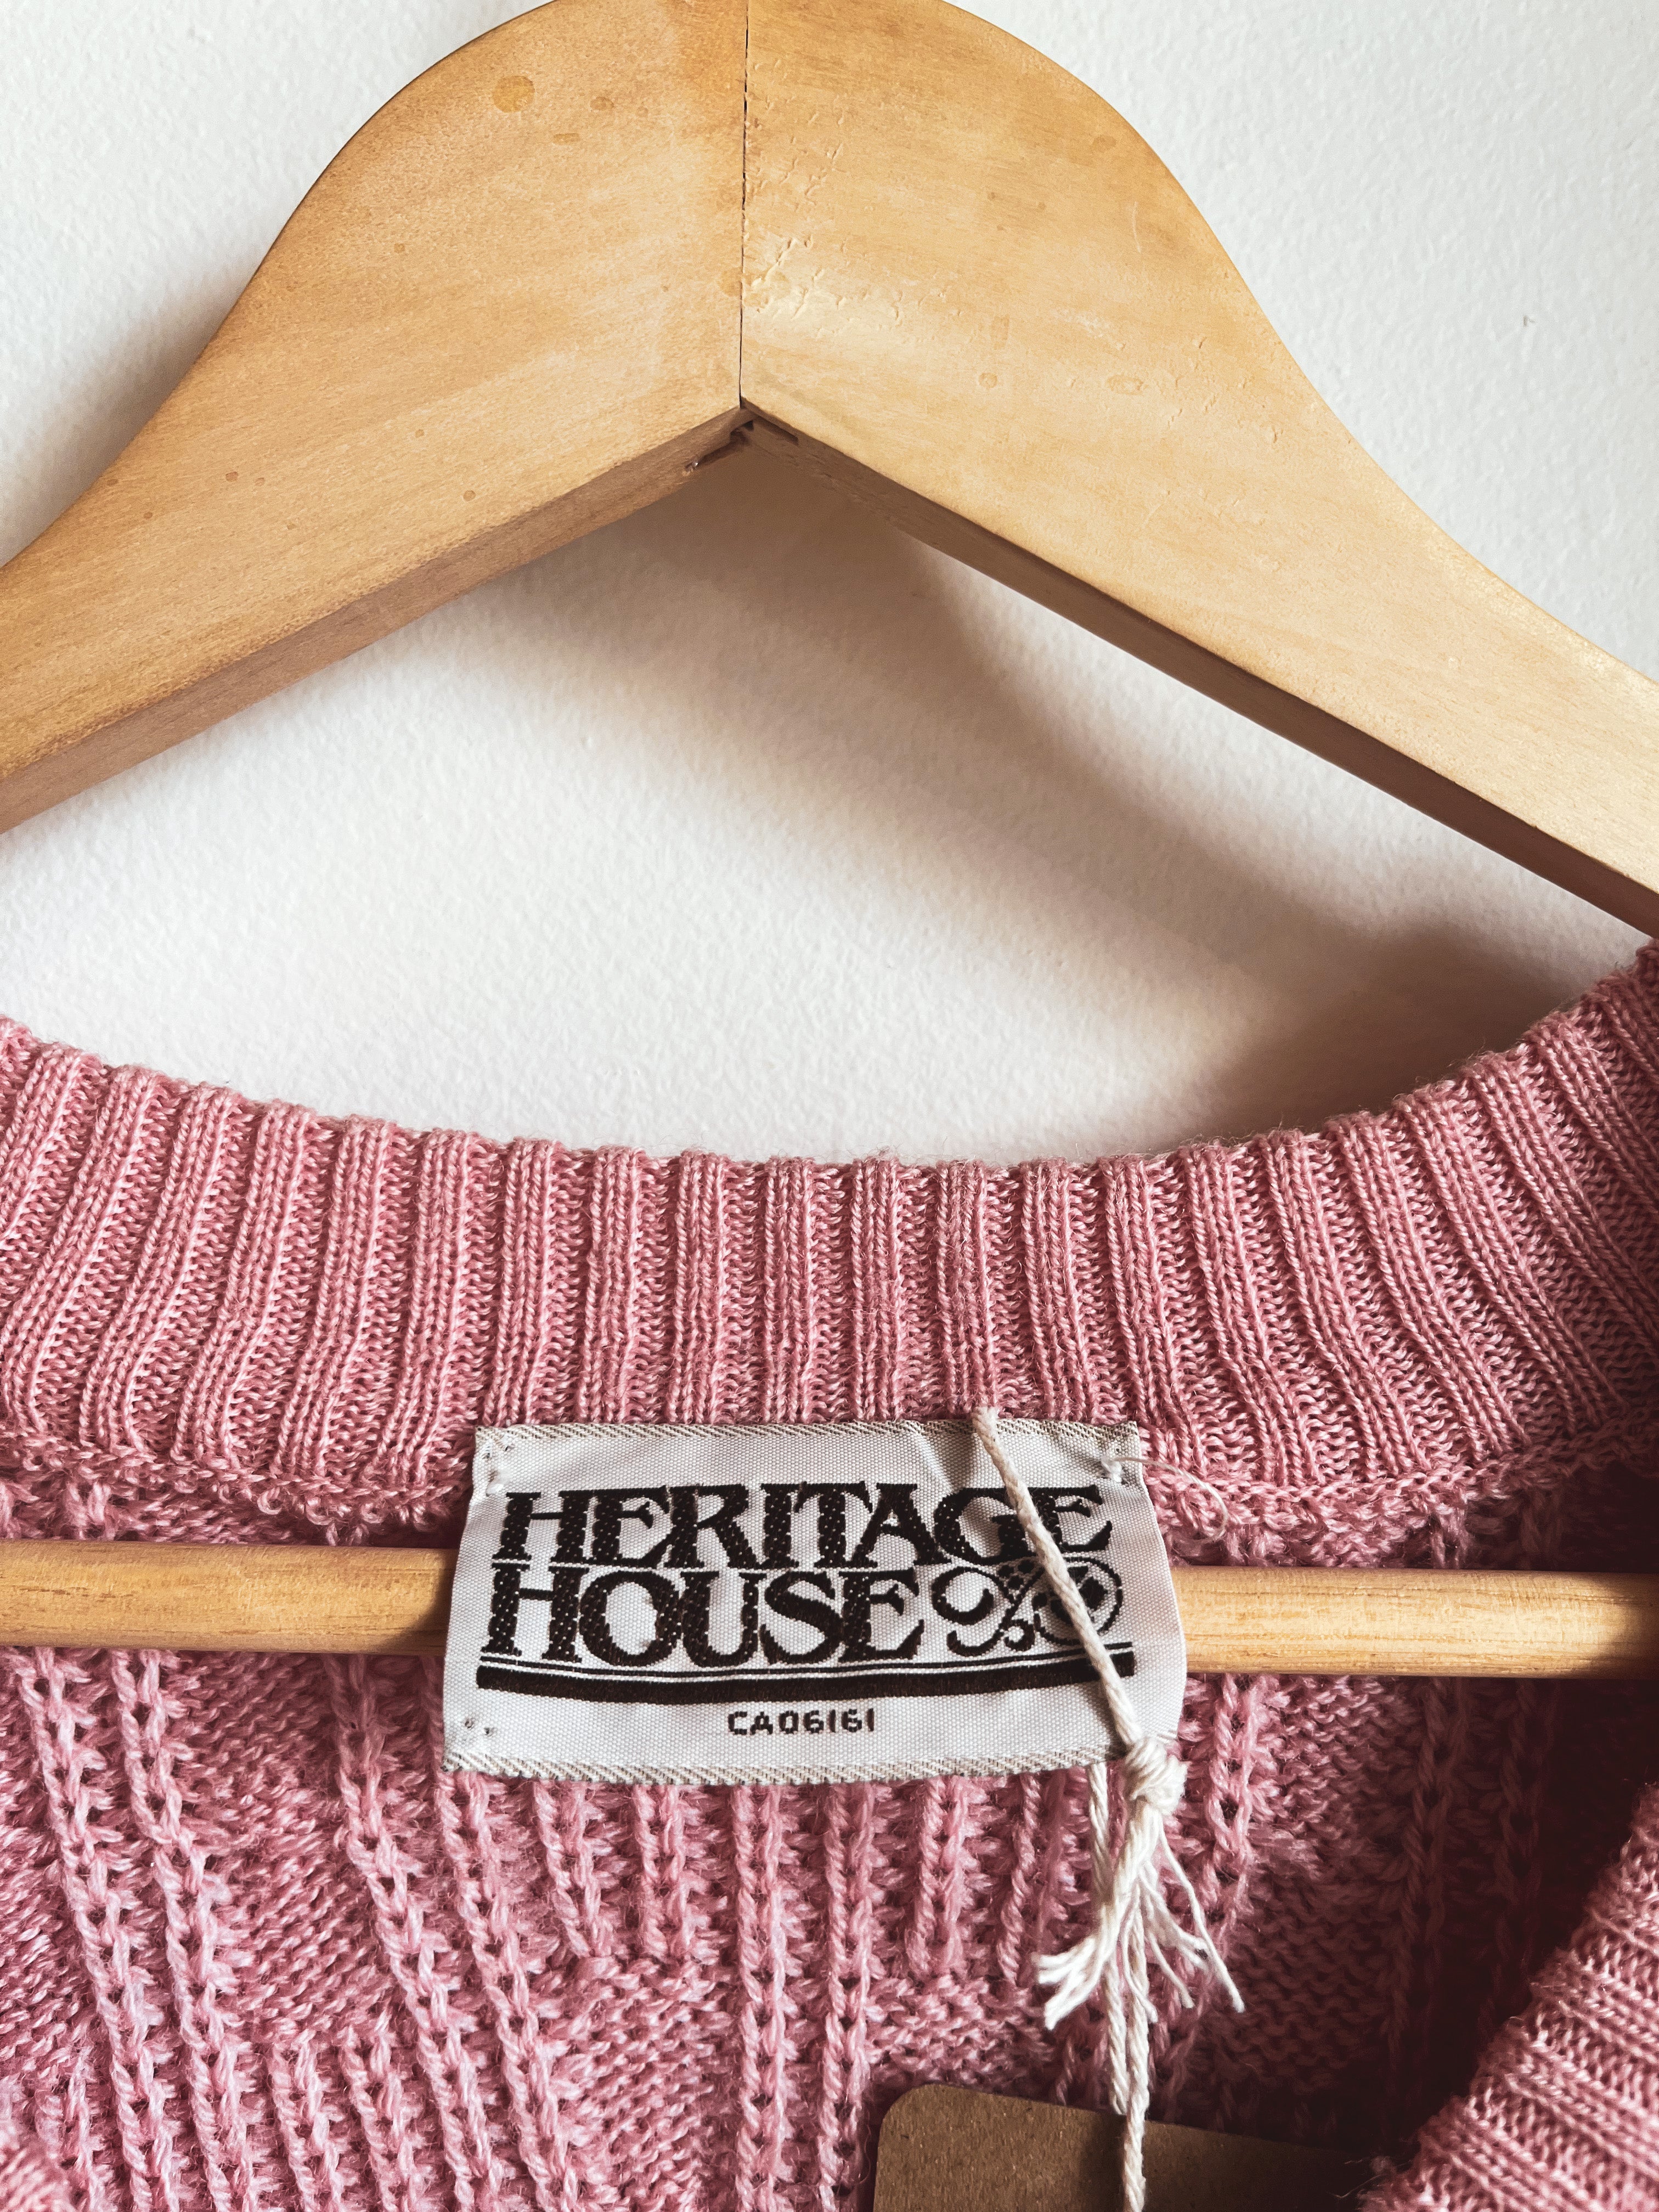 vintage pink v-neck sweater | S